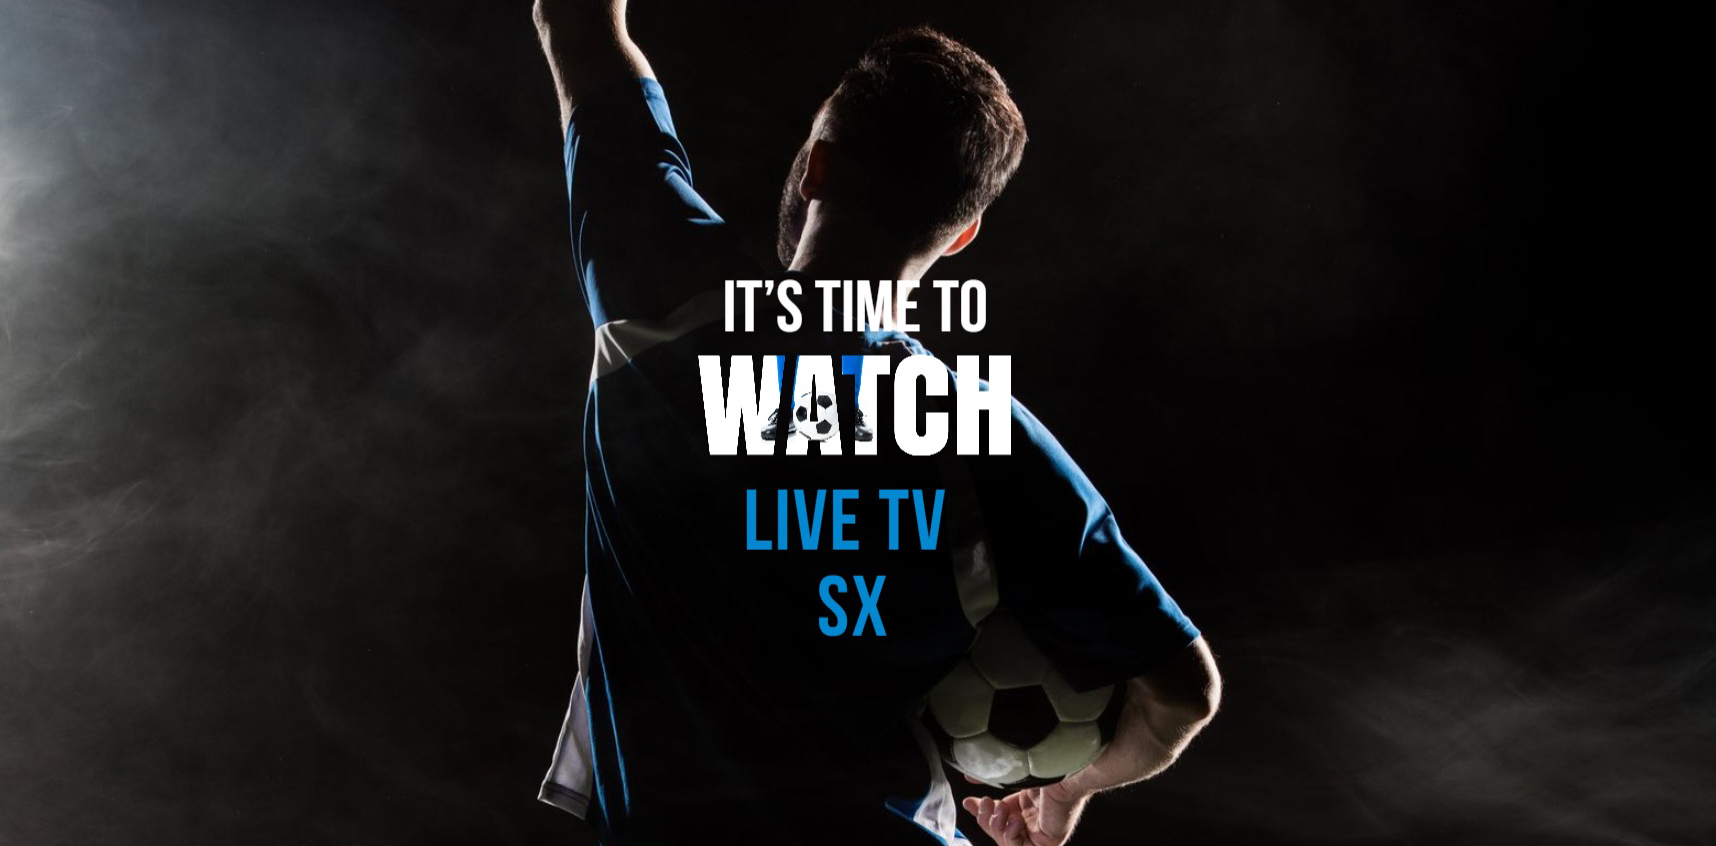 Live TV SX: Lalajo Live Olahraga Streaming Gratis